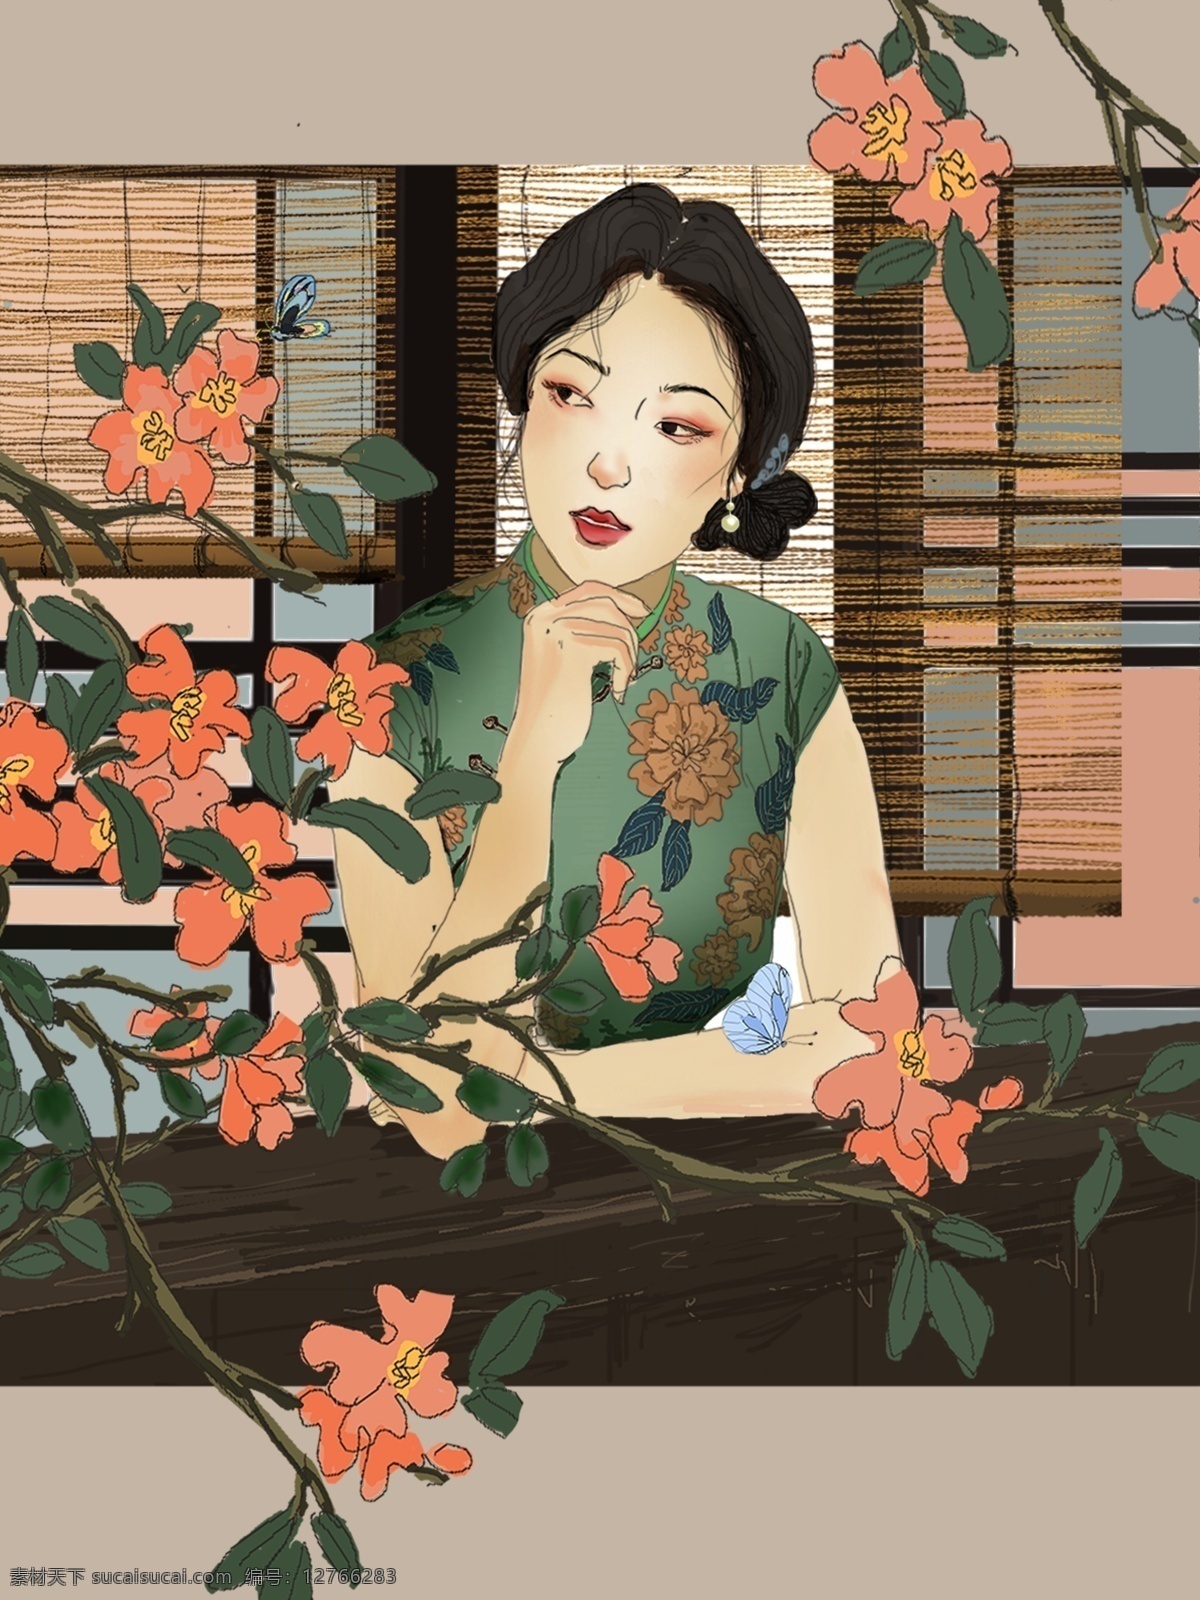 美景 吸引 民国 夫人 插画 花卉 清新 唯美 复古 手绘 女人 植物 中国风 头像 壁纸 微博微信用图